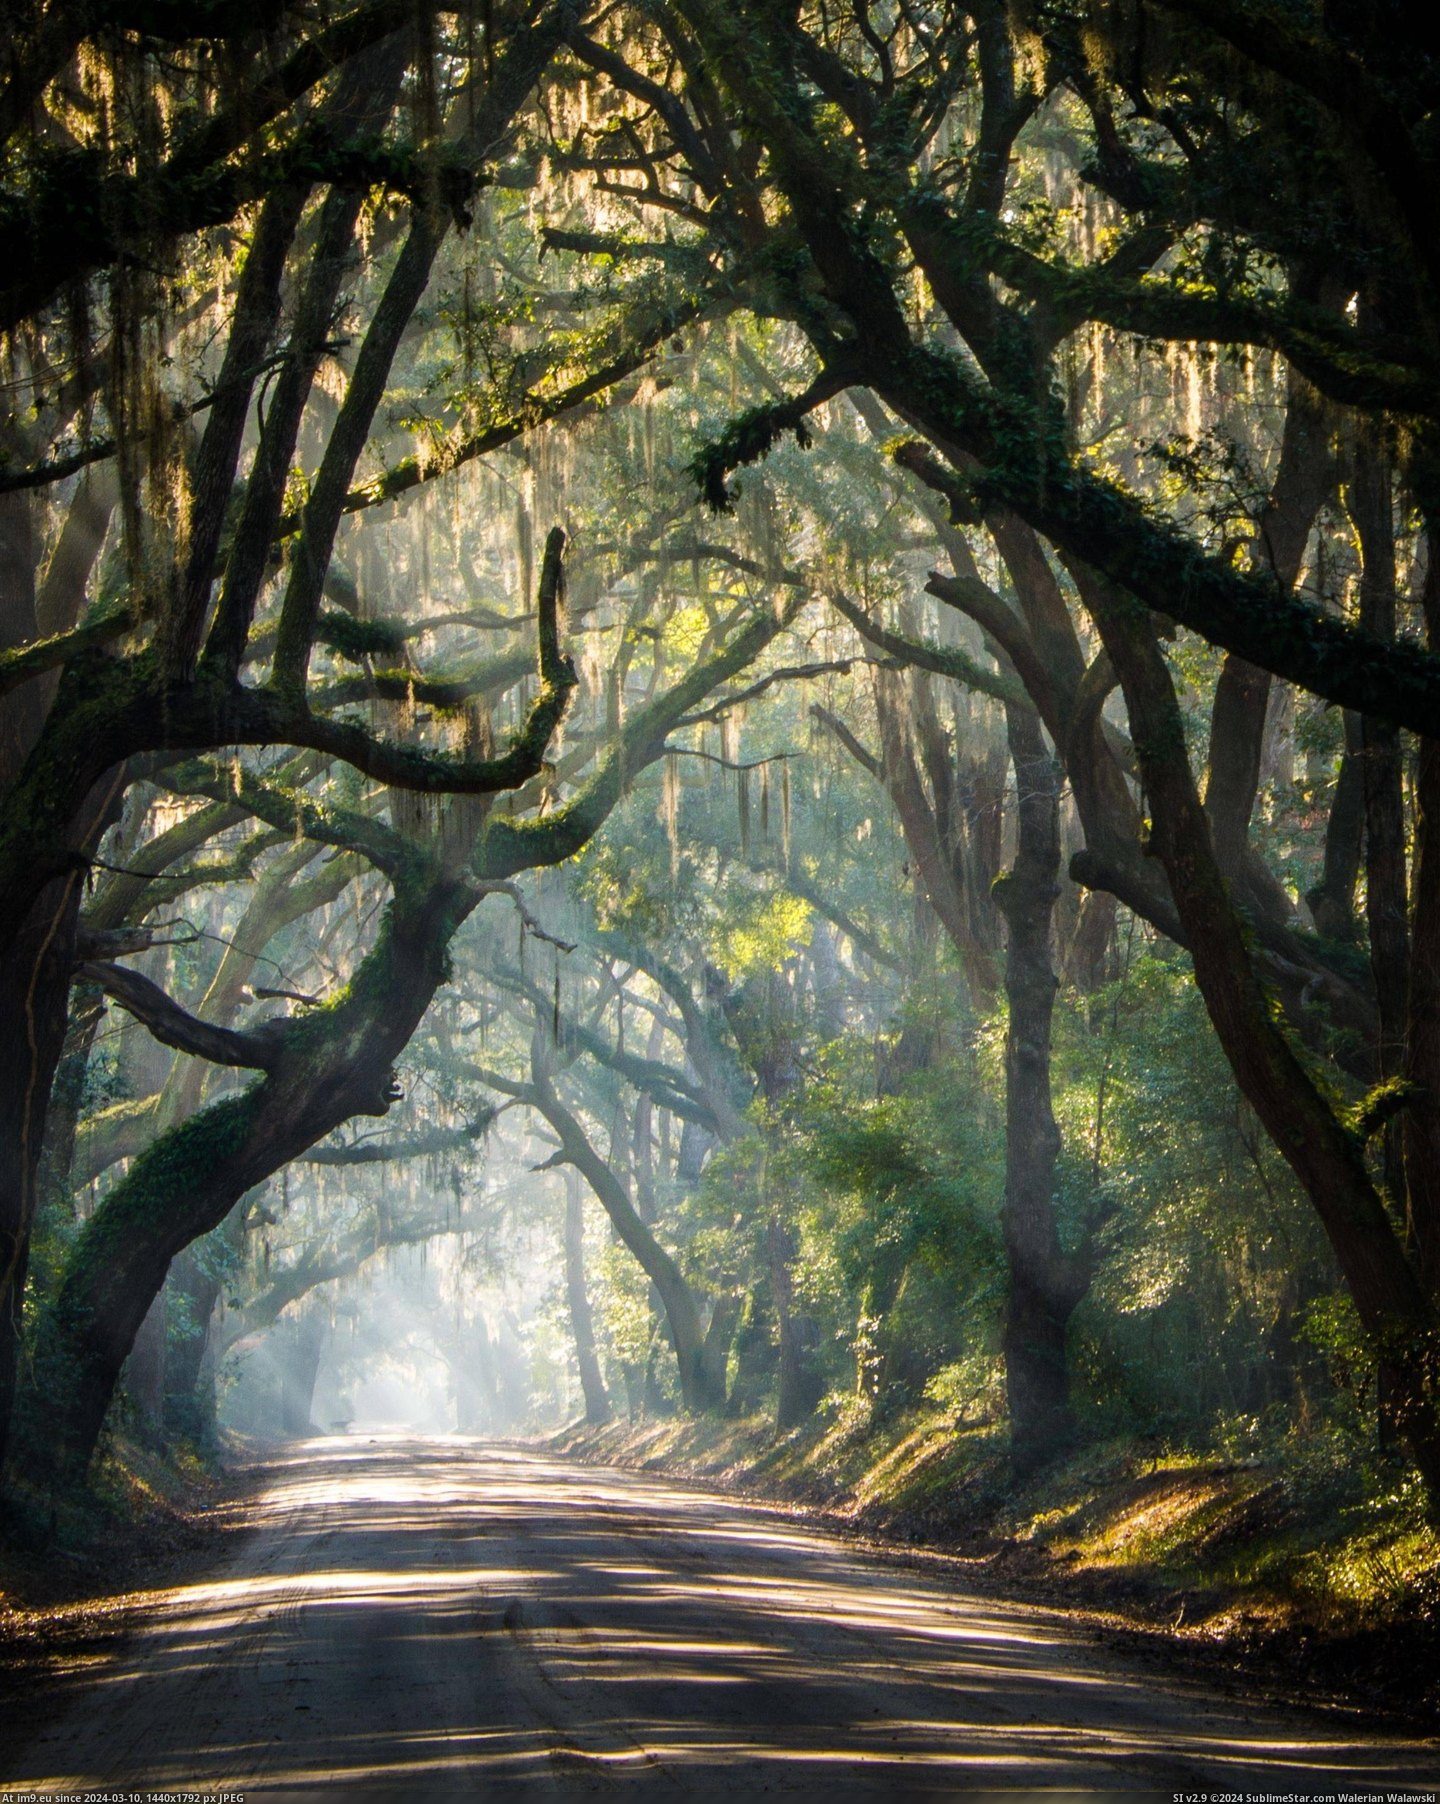 #South #Rural #Roads #Carolina [Pics] The rural roads of South Carolina Pic. (Bild von album My r/PICS favs))